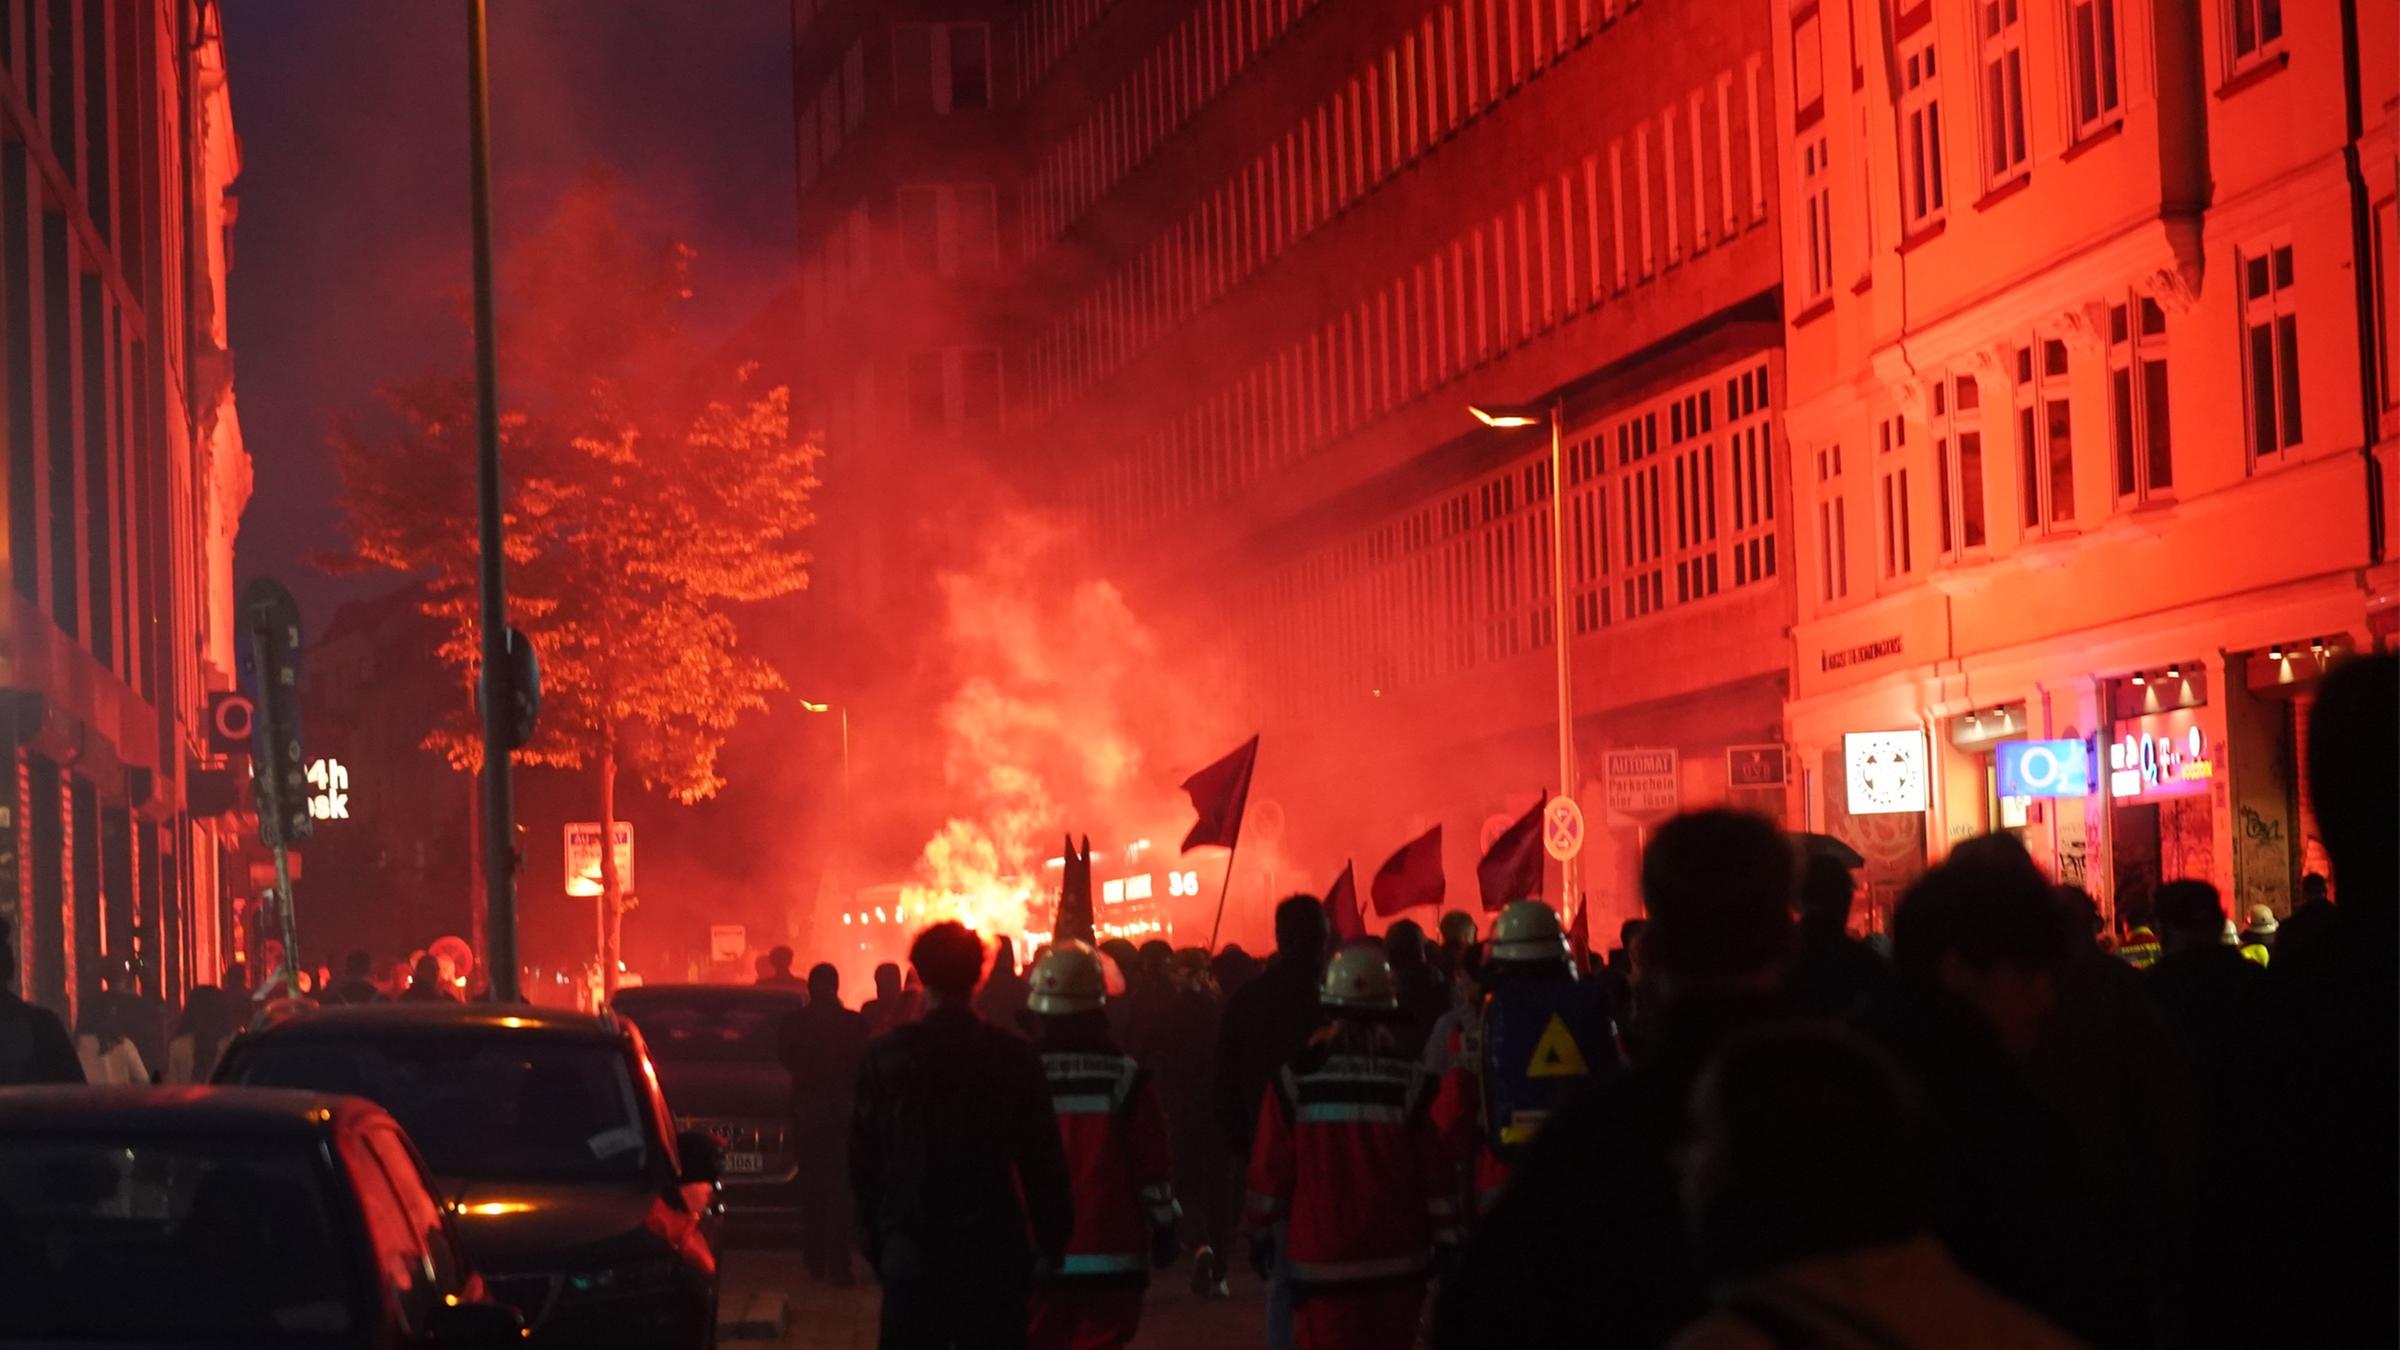 Demonstranten in Hamburg brennen nachts rote Feuerwerkskörper ab. Die Häuserfassade im Hintergrund leuchtet rot. Im Vordergrund eine größere Masse an Demonstranten.